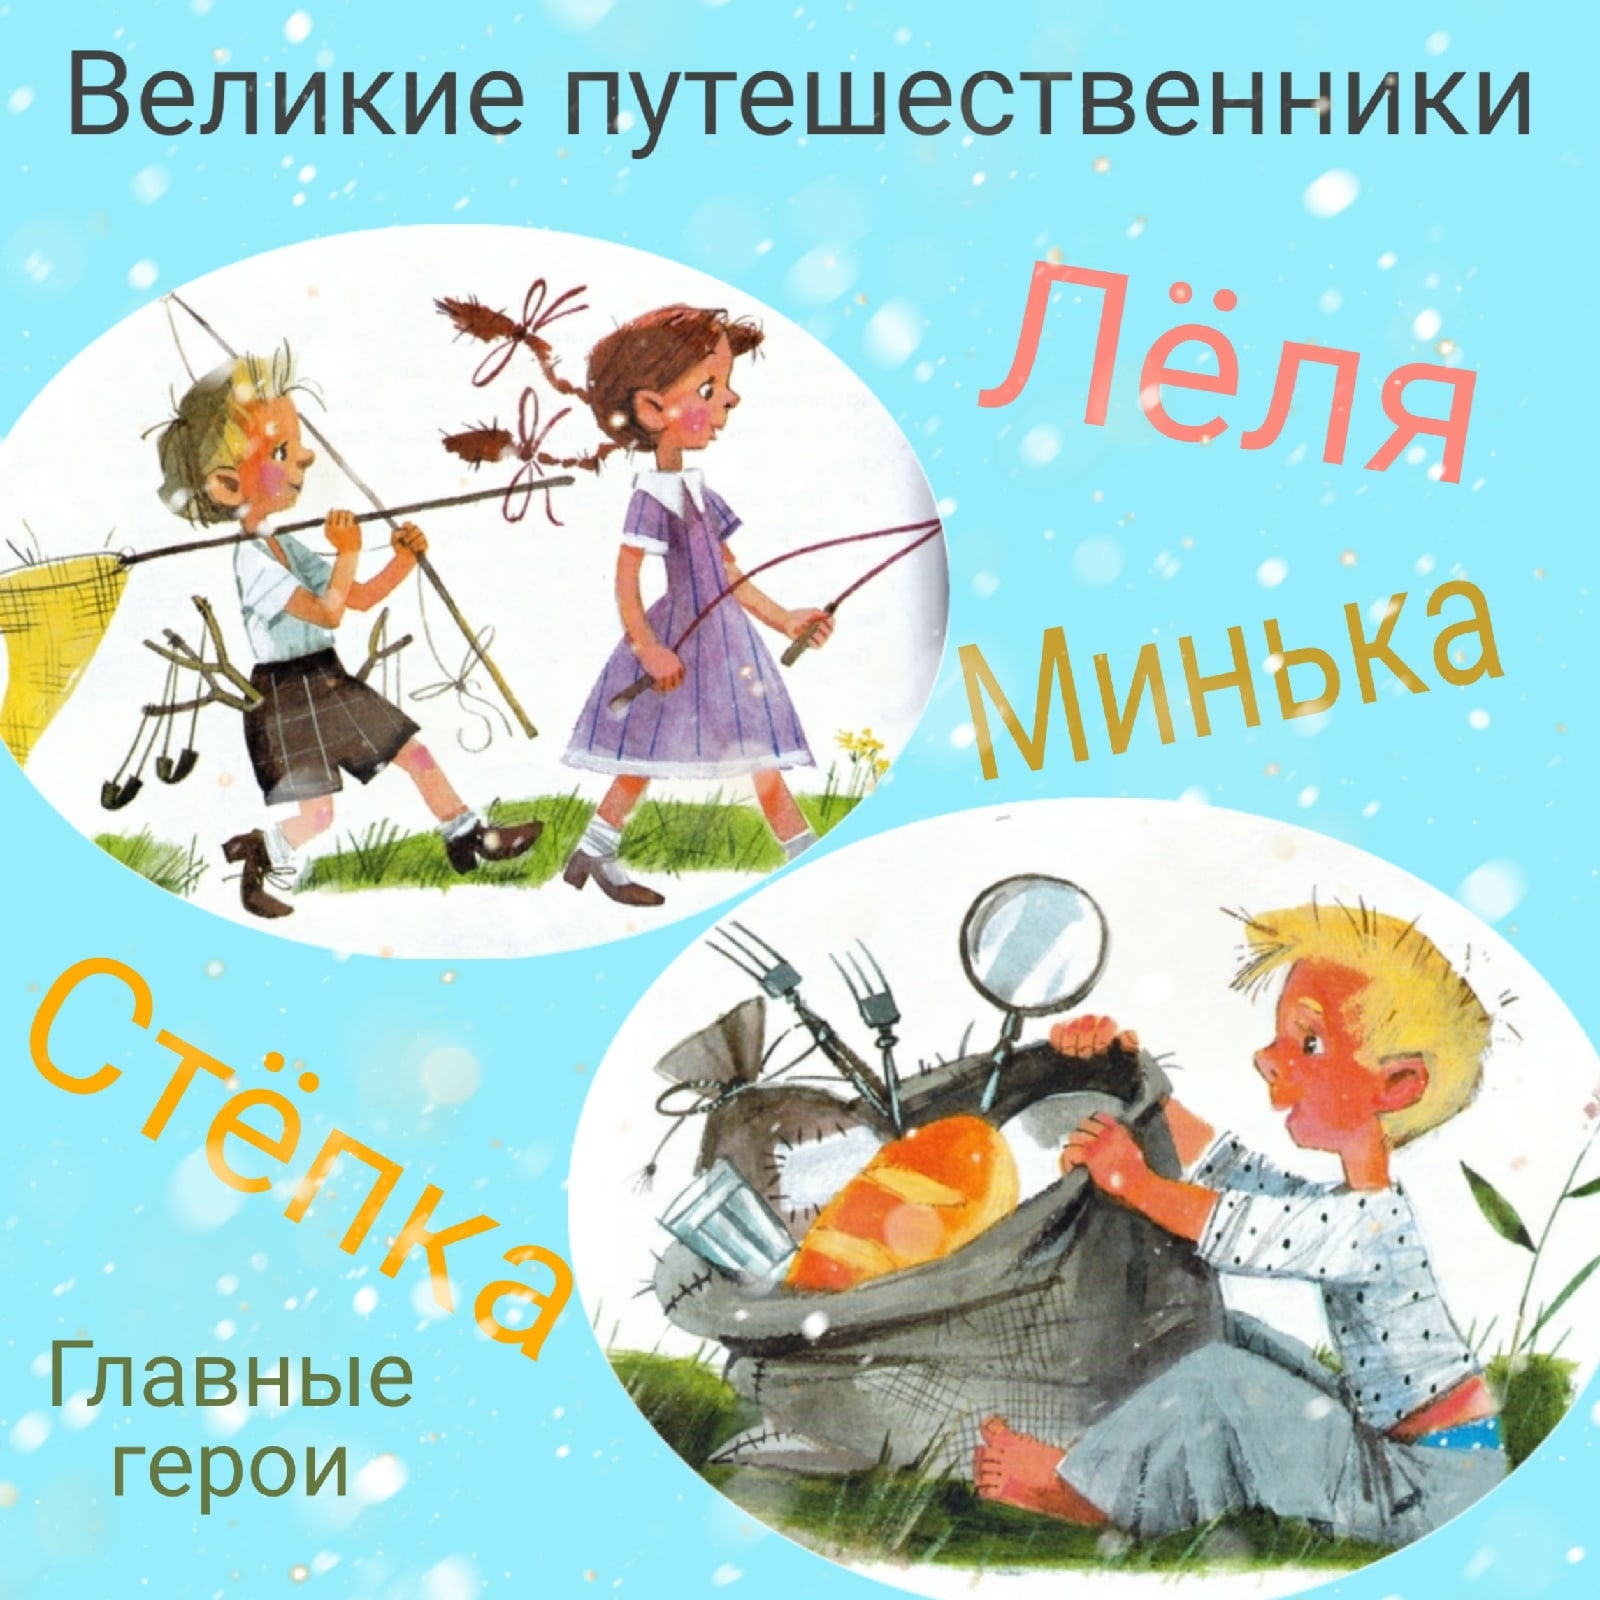 Иллюстрации м.м Зощенко Великие путешественники